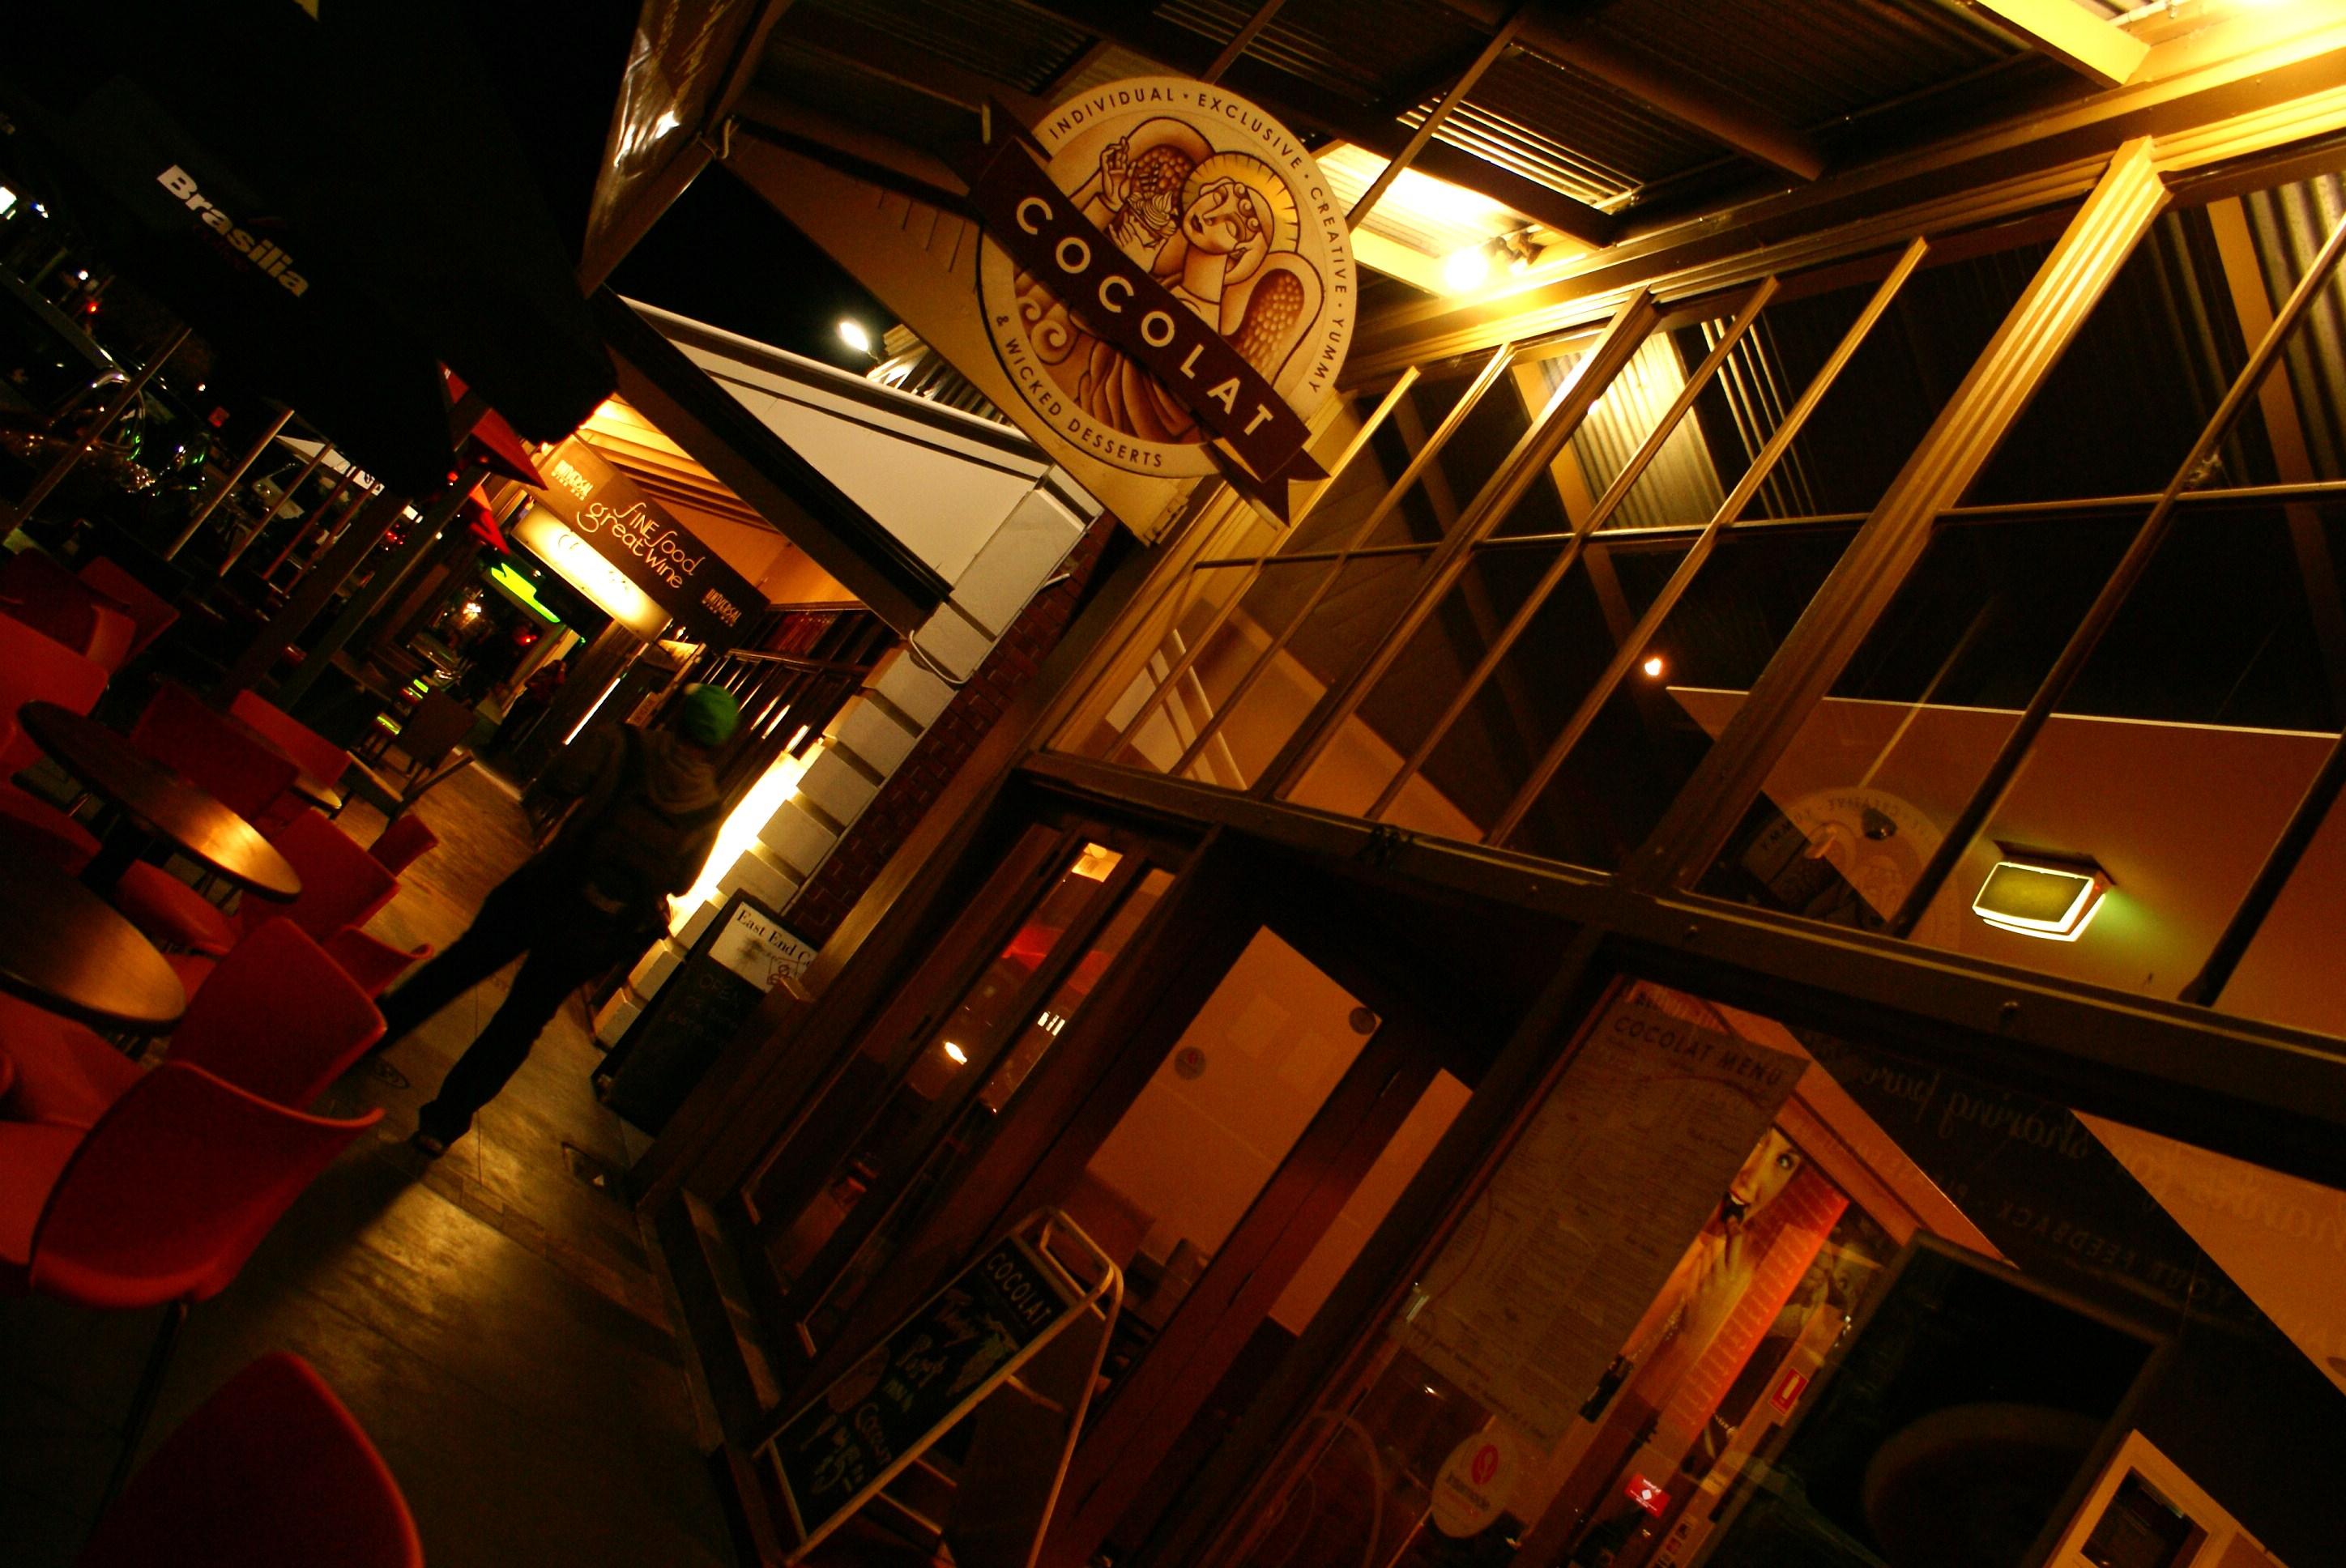 Choco gourmandises chez Cocolat